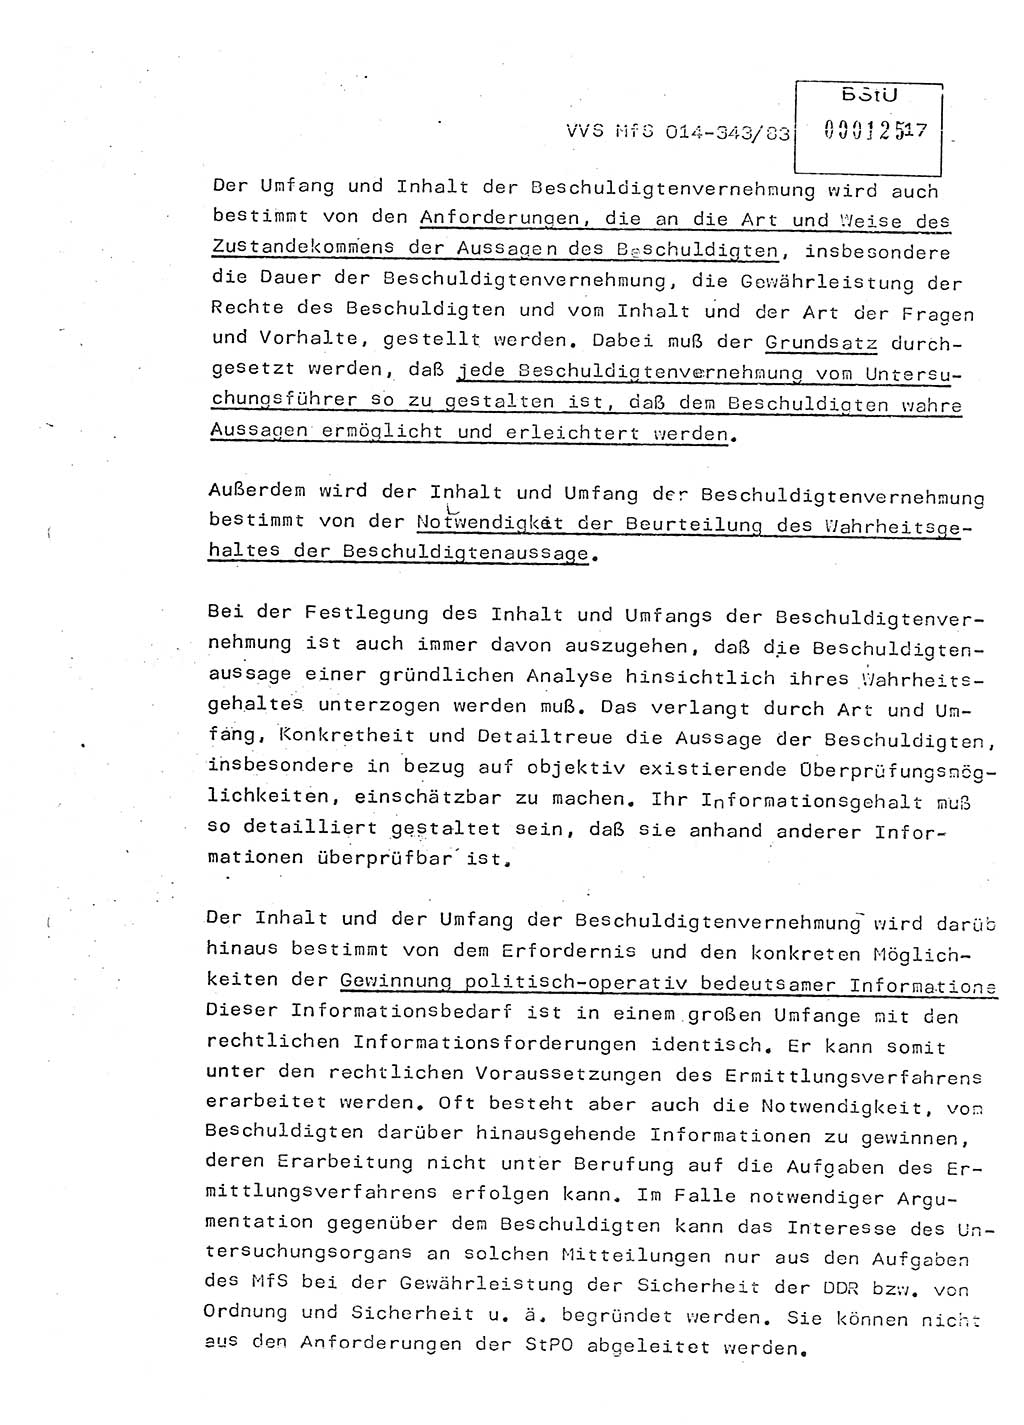 Lektion Ministerium für Staatssicherheit (MfS) [Deutsche Demokratische Republik (DDR)], Hauptabteilung (HA) Ⅸ, Vertrauliche Verschlußsache (VVS) o014-343/83, Berlin 1983, Seite 17 (Lekt. MfS DDR HA Ⅸ VVS o014-343/83 1983, S. 17)